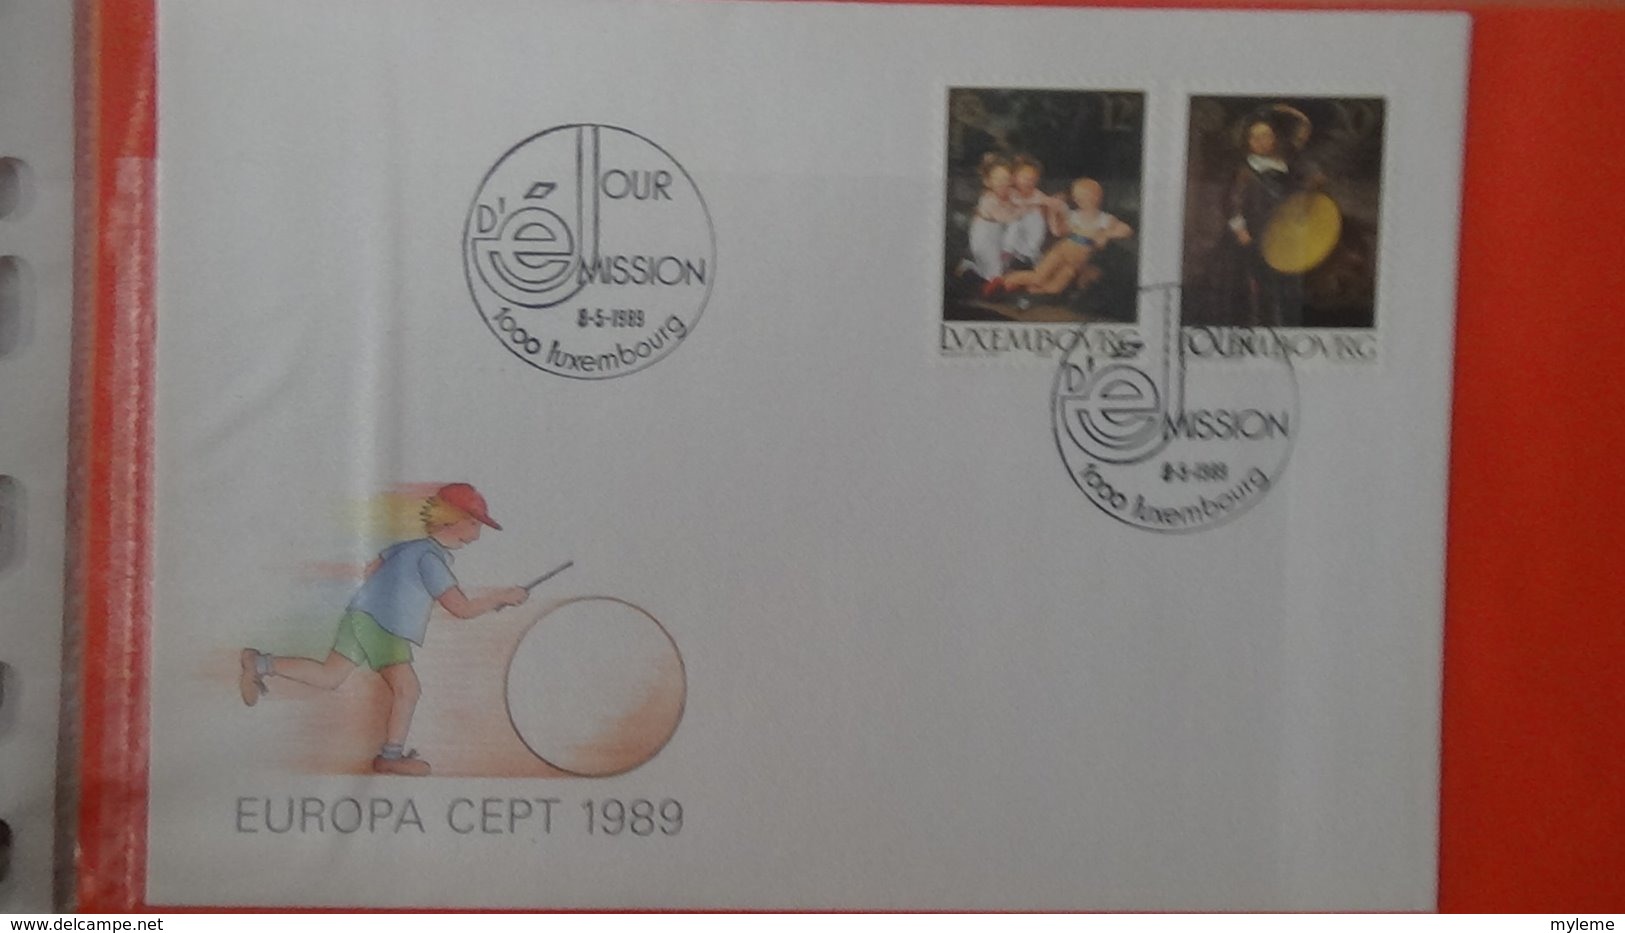 Dispersion d'une collection d'enveloppe 1er jour et autres dont 111 sur le thème EUROPA Luxembourg